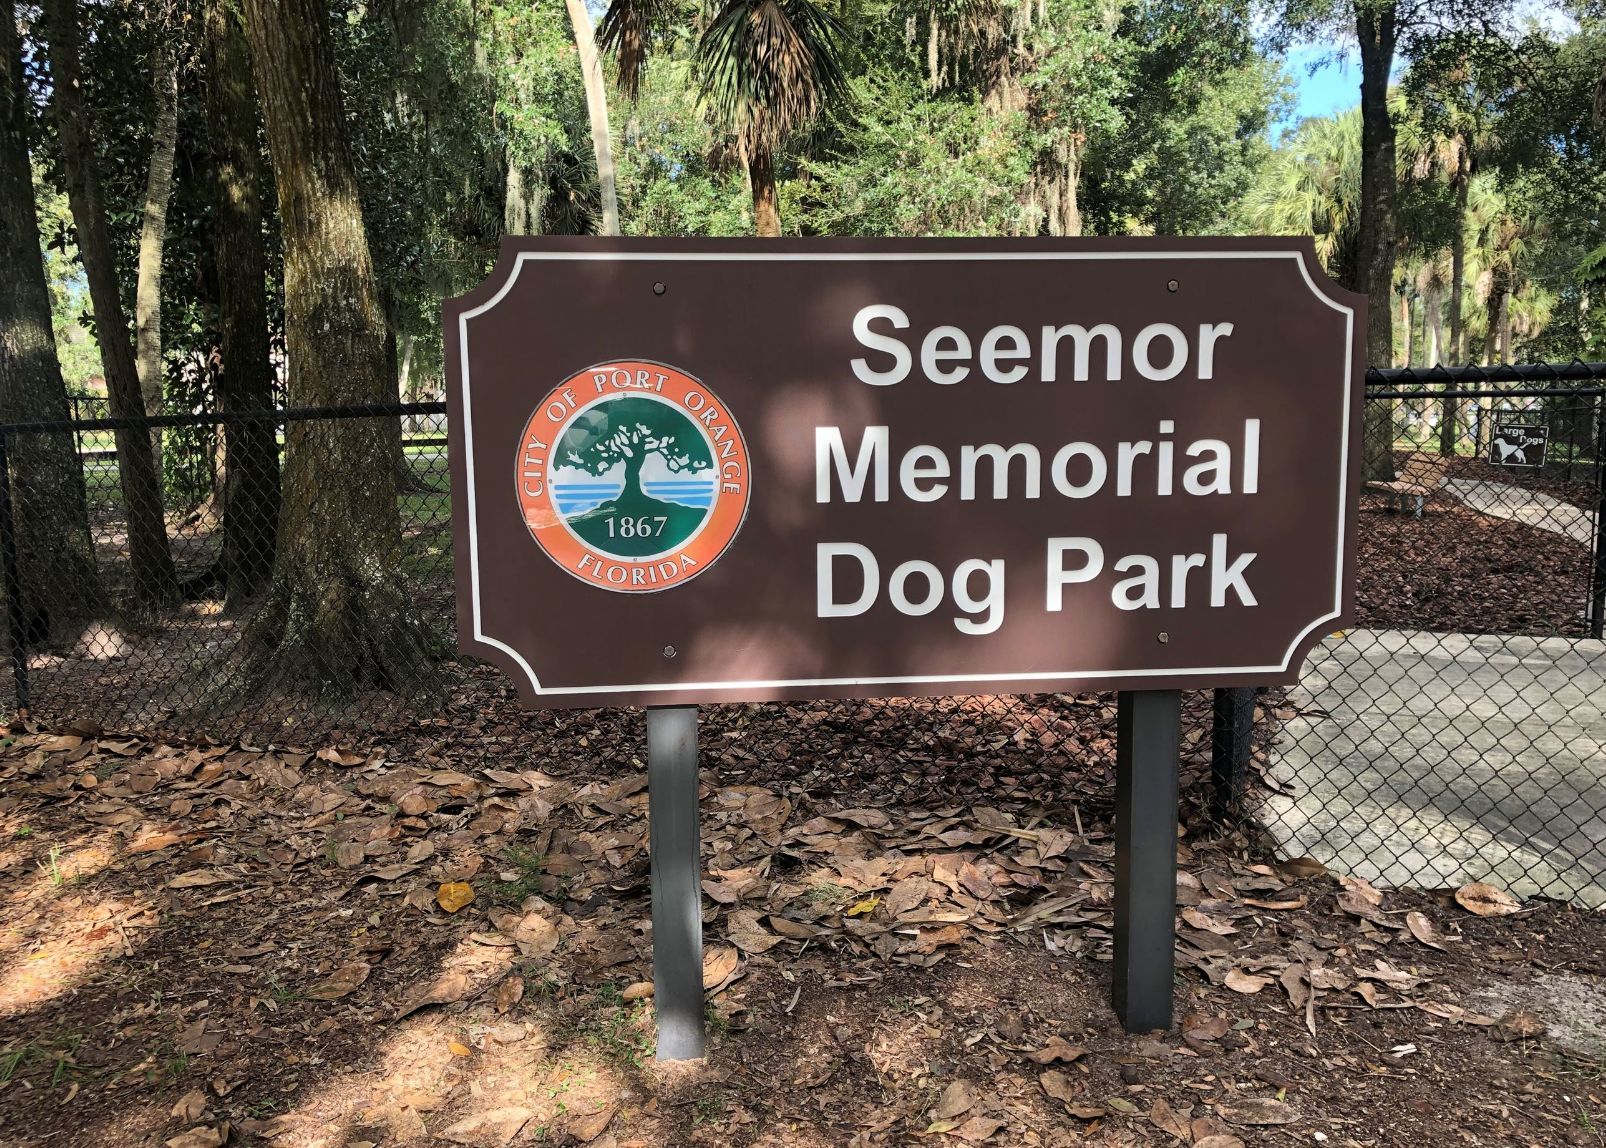 Seemor Memorial Dog Park